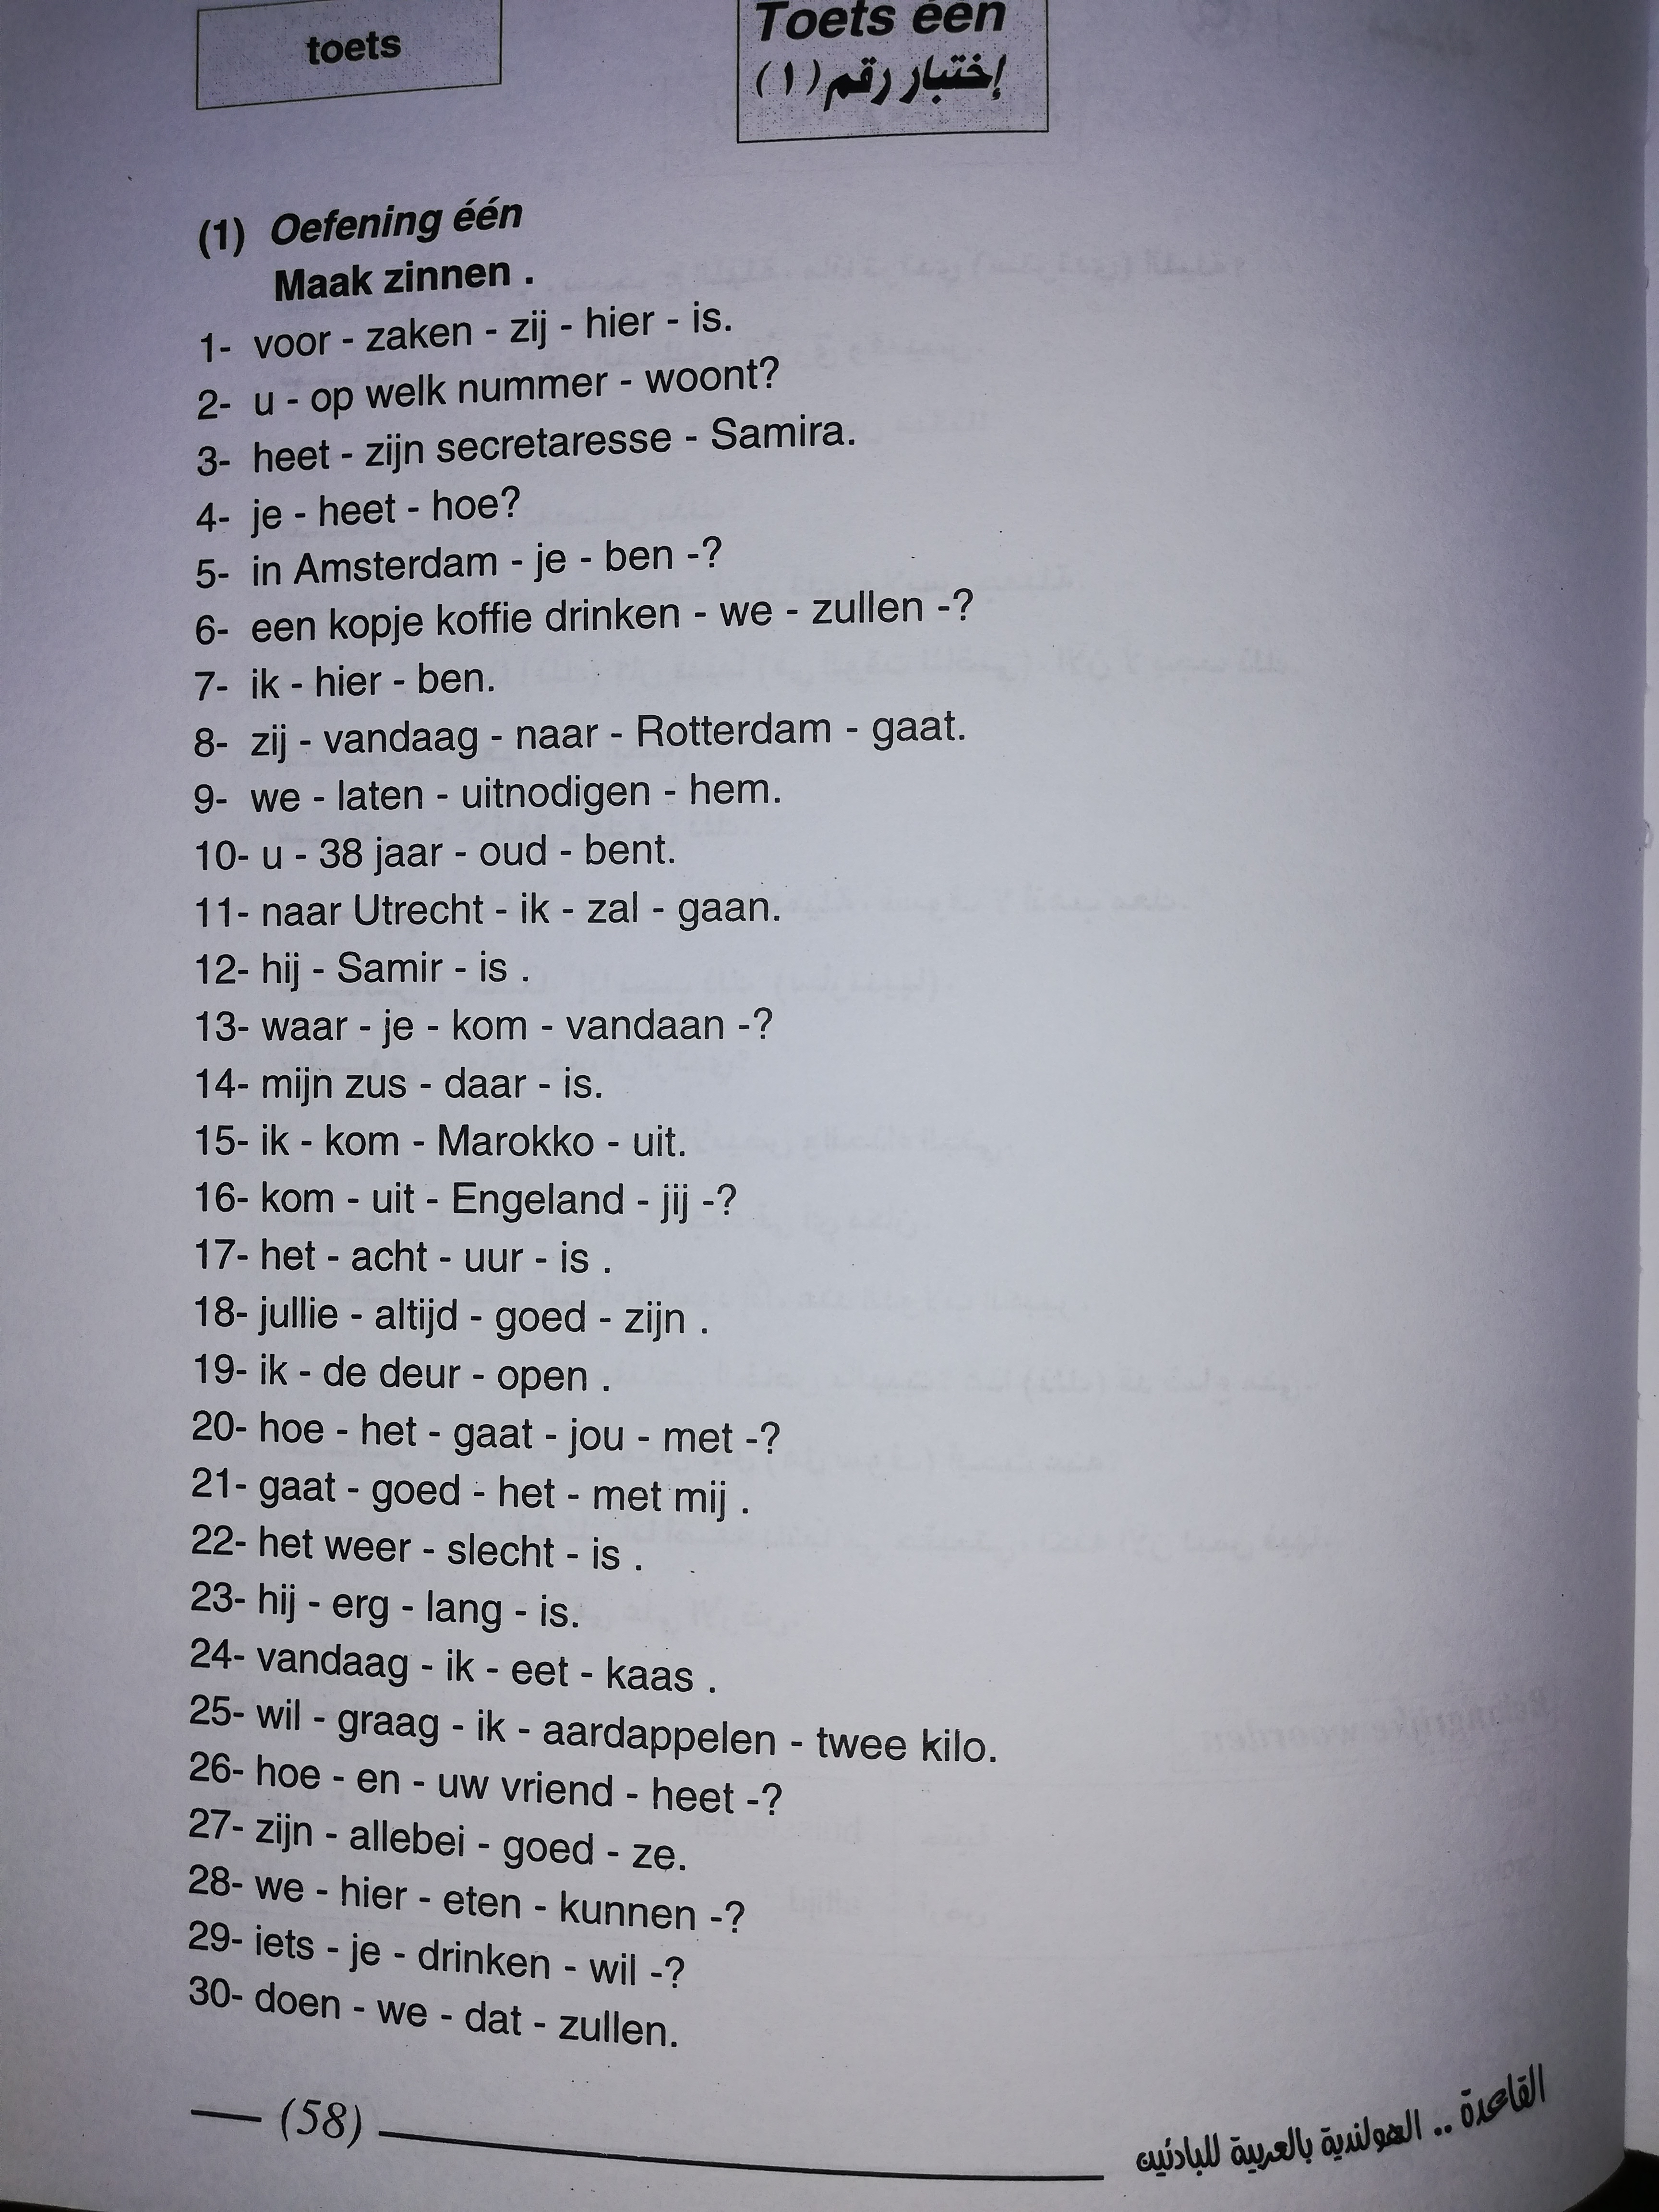 oefening een Maak zinnen Nederlands leren